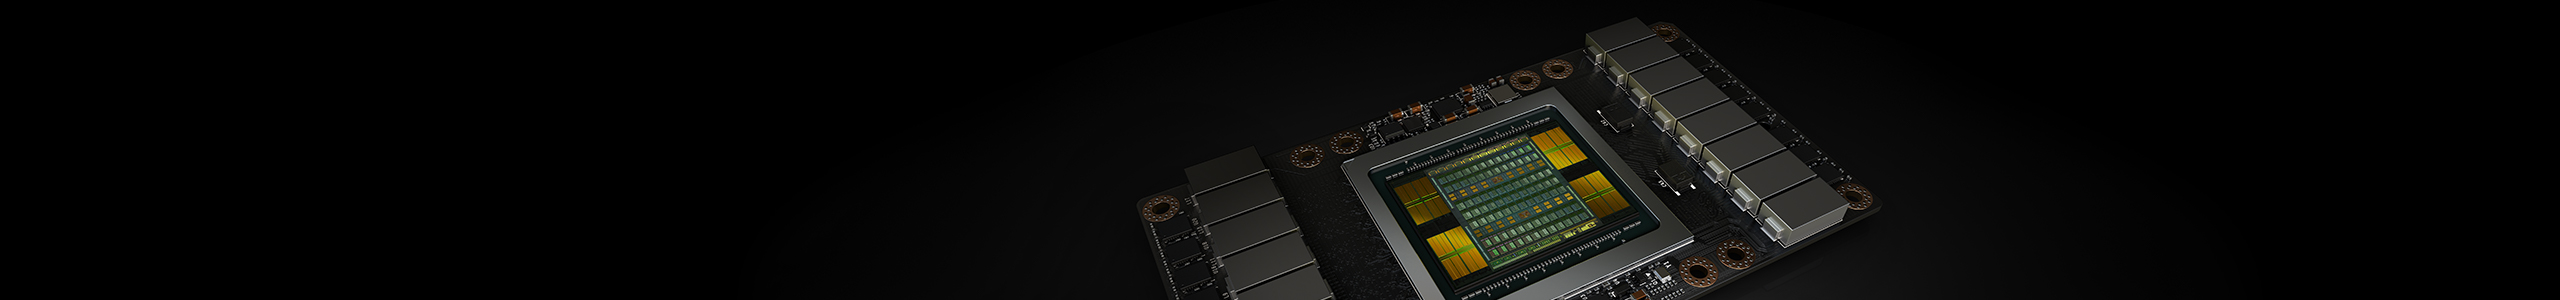 Nvidia Tesla-GPU data center acceleration solution